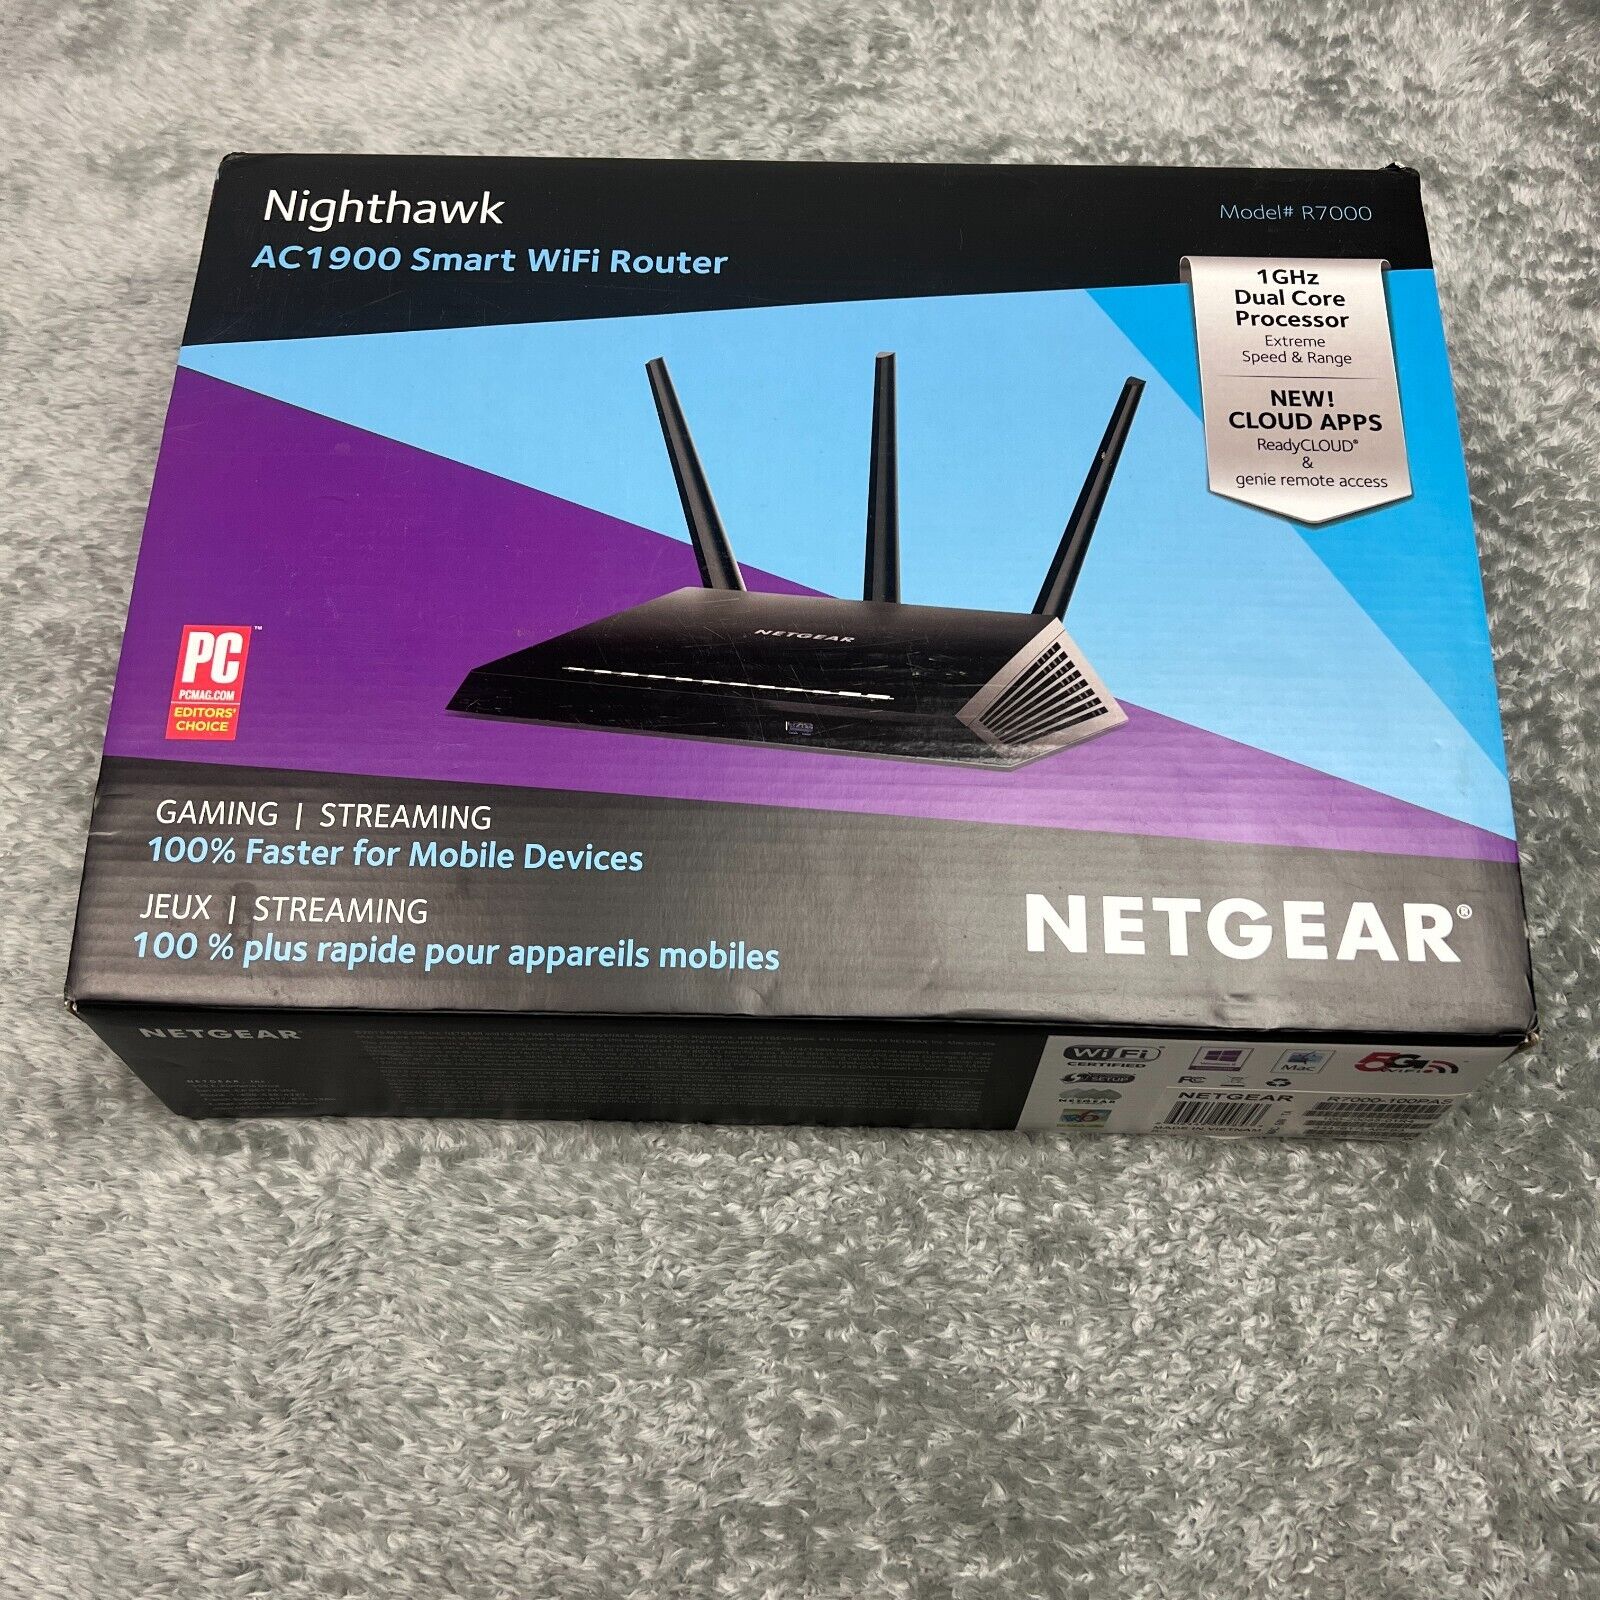 NETGEAR R7000 Nighthawk AC1900 Smart WiFi Router Complete in Box